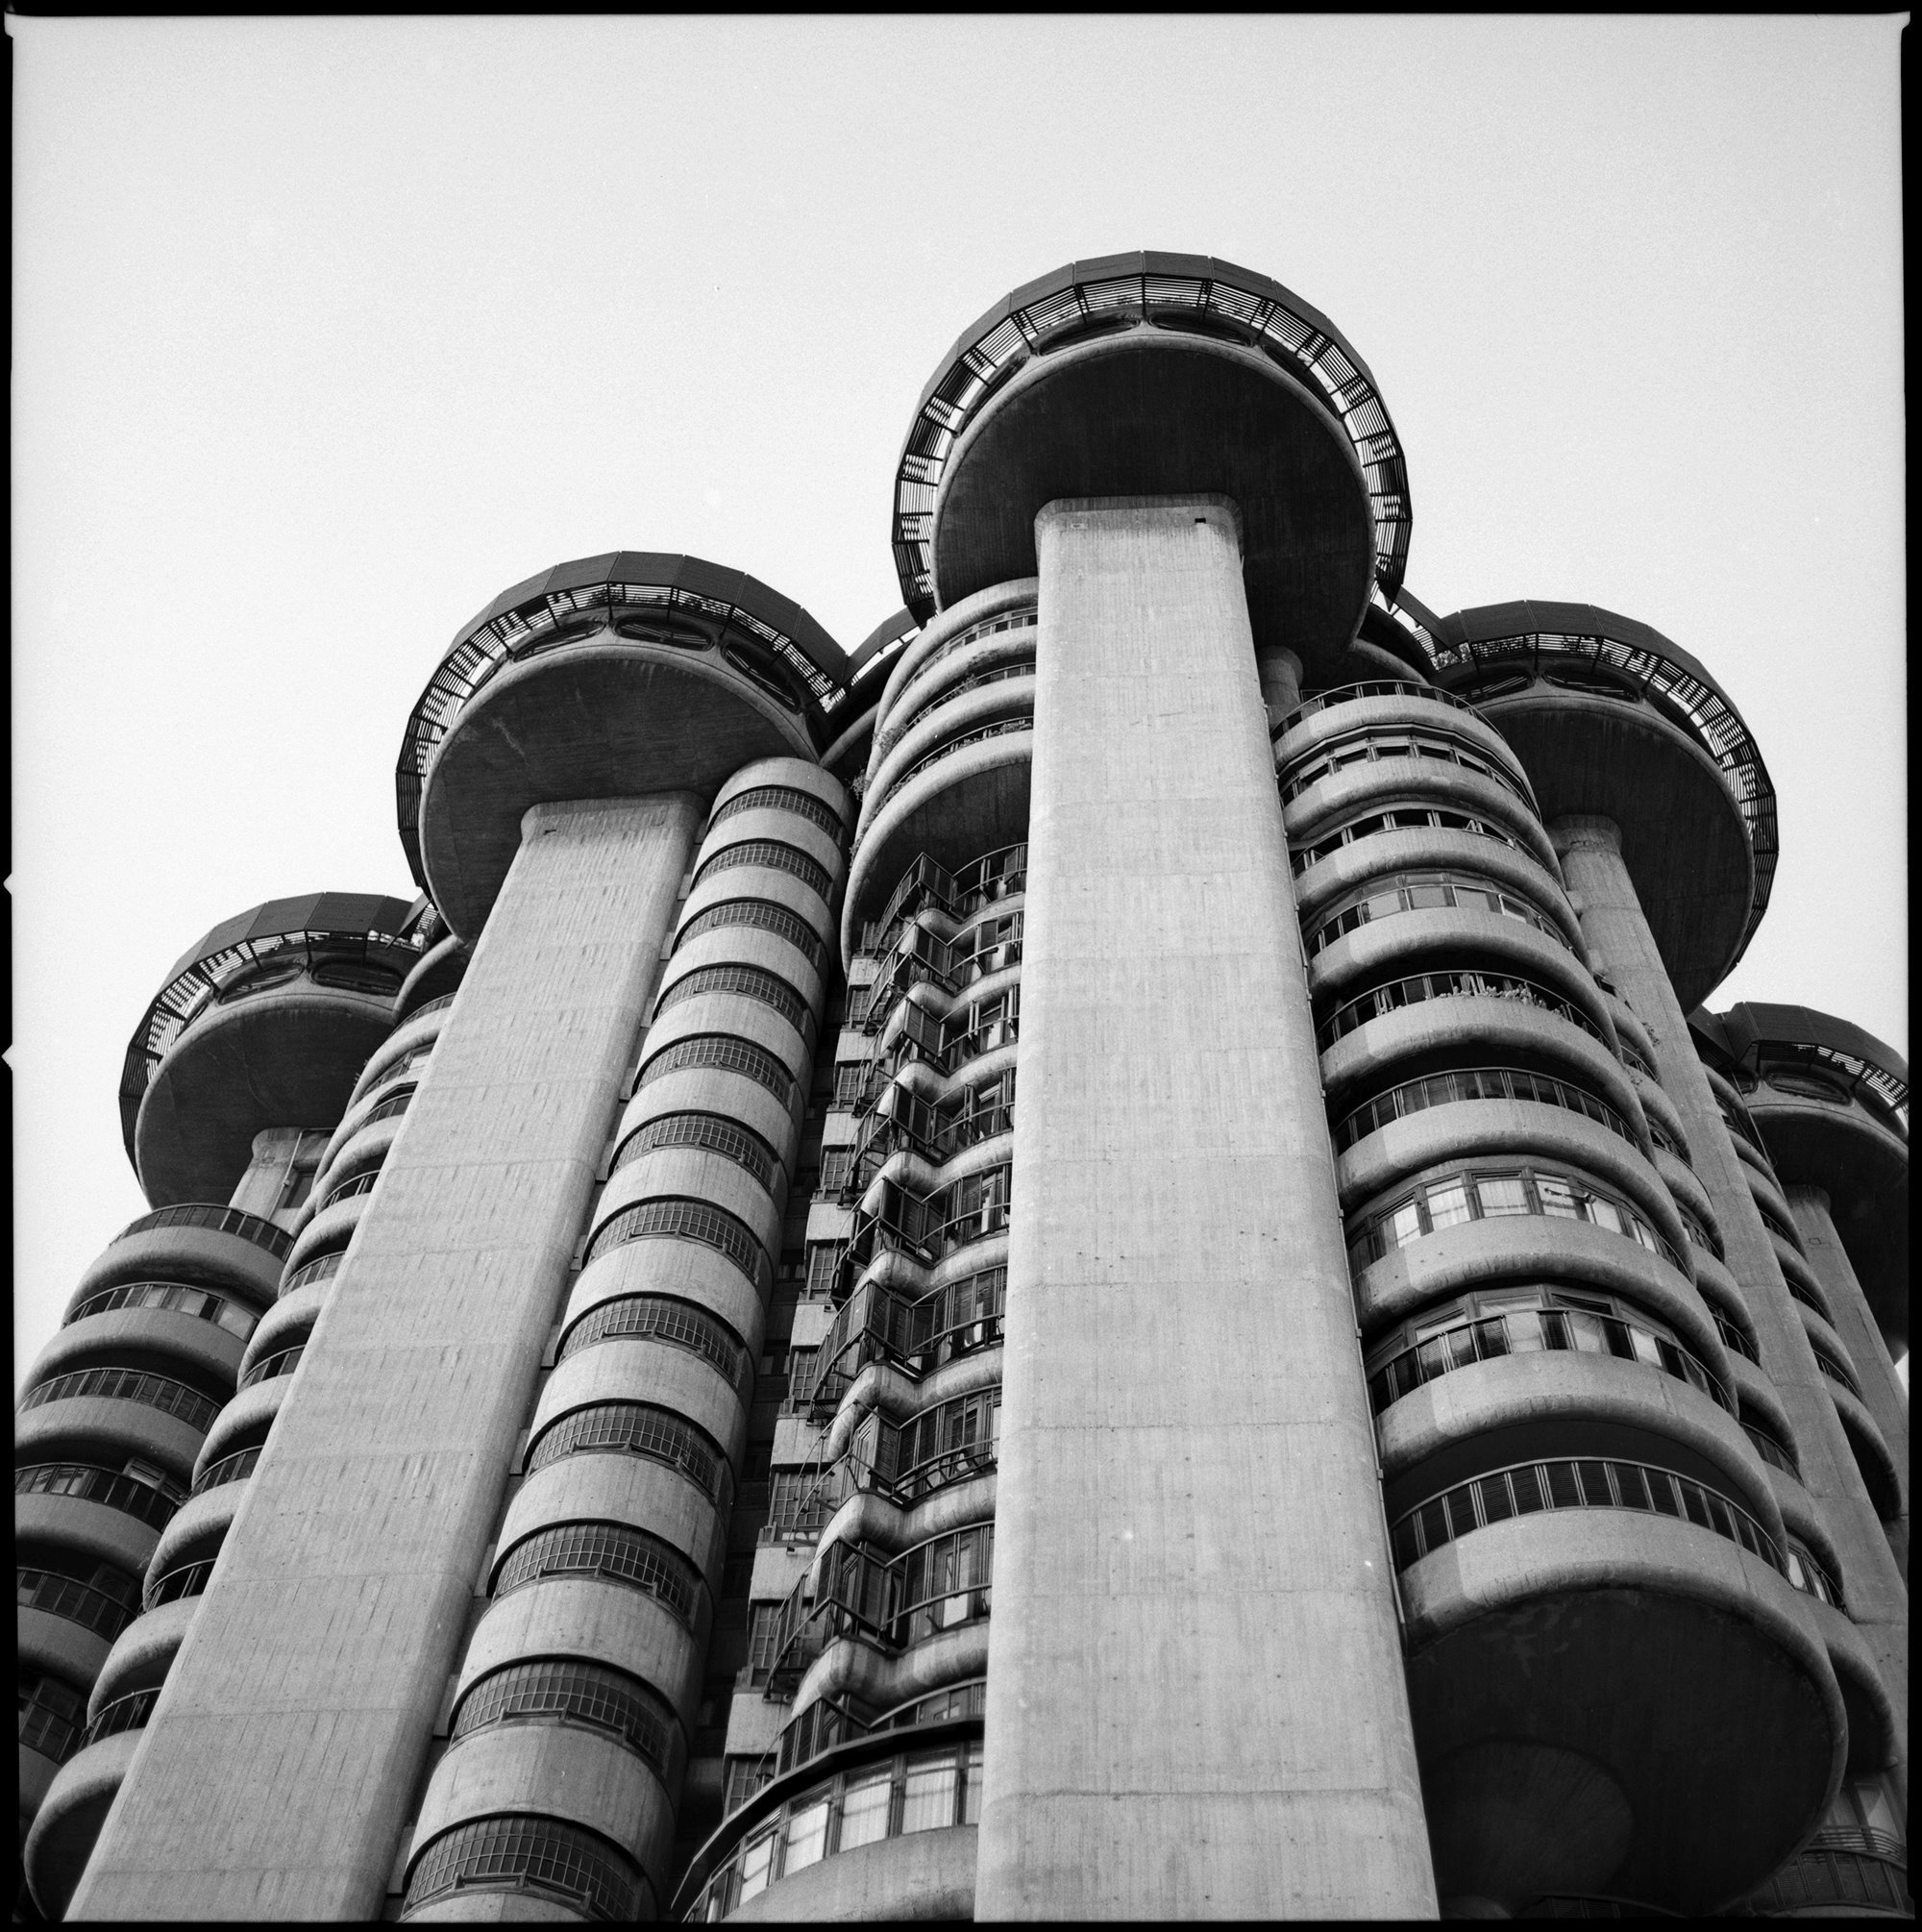 Torres Blancas, Madrid, España. (Arquitecto: Francisco Javier Sáenz de Oiza, 1964-68).